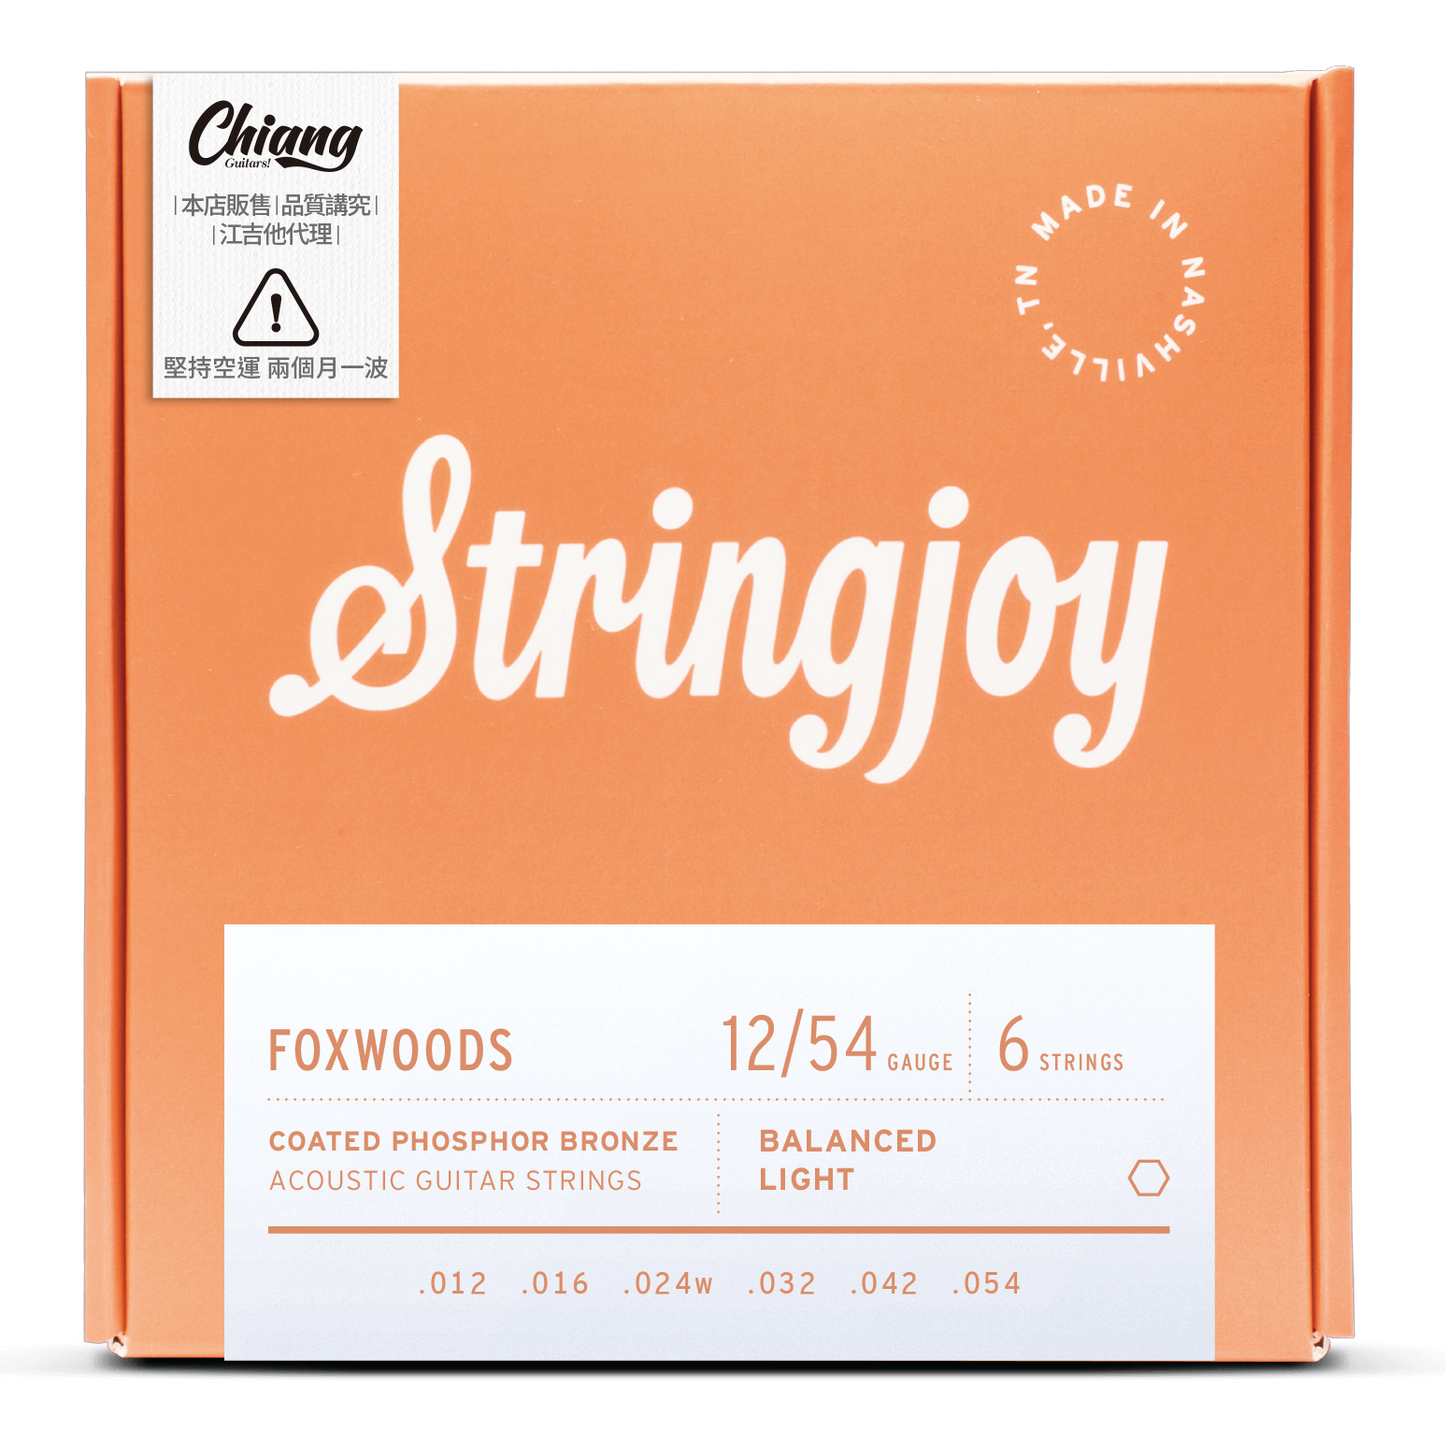 Stringjoy 「狐狸木」 木吉他6弦 12/54